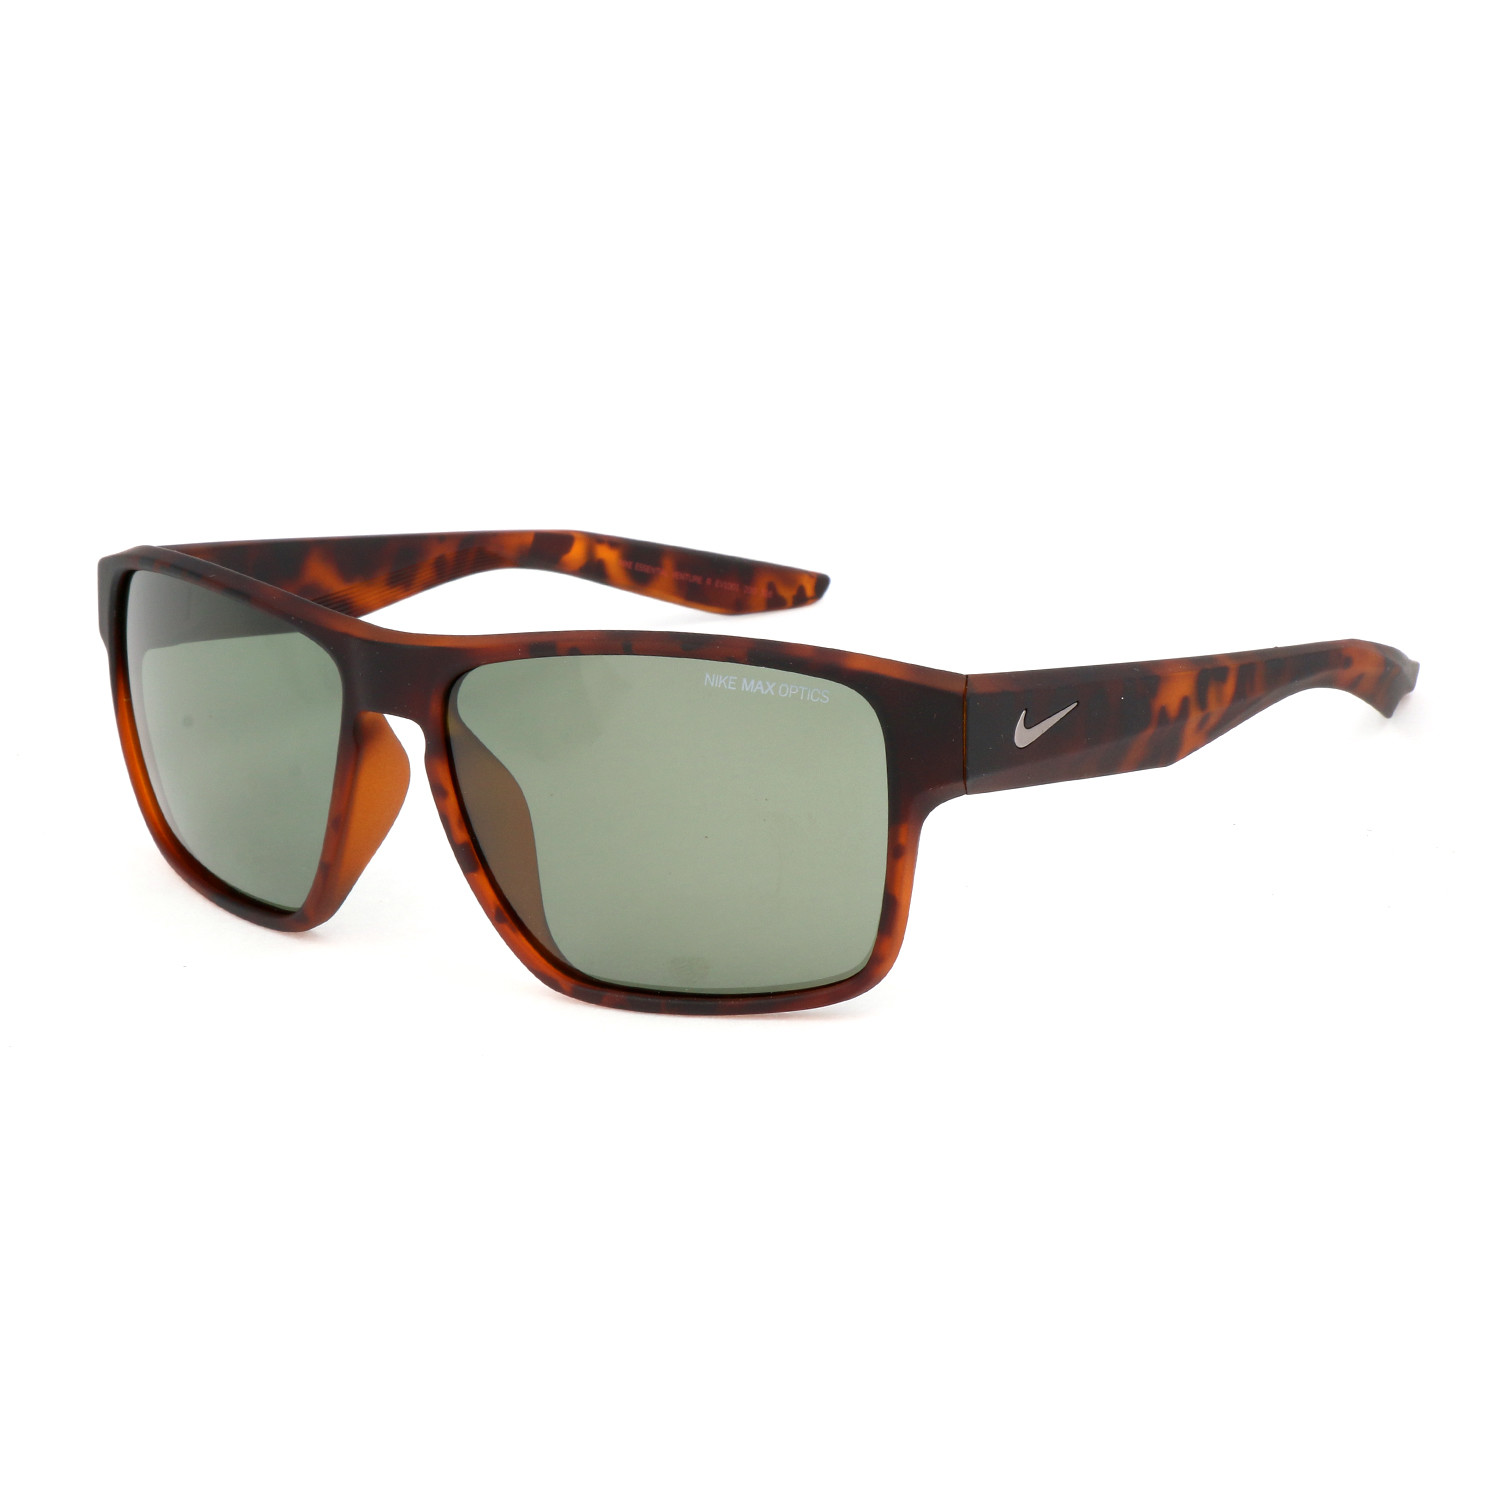 Unisex Essential Venture Sunglasses // Tortoise Green - Designer Glasses - Touch of